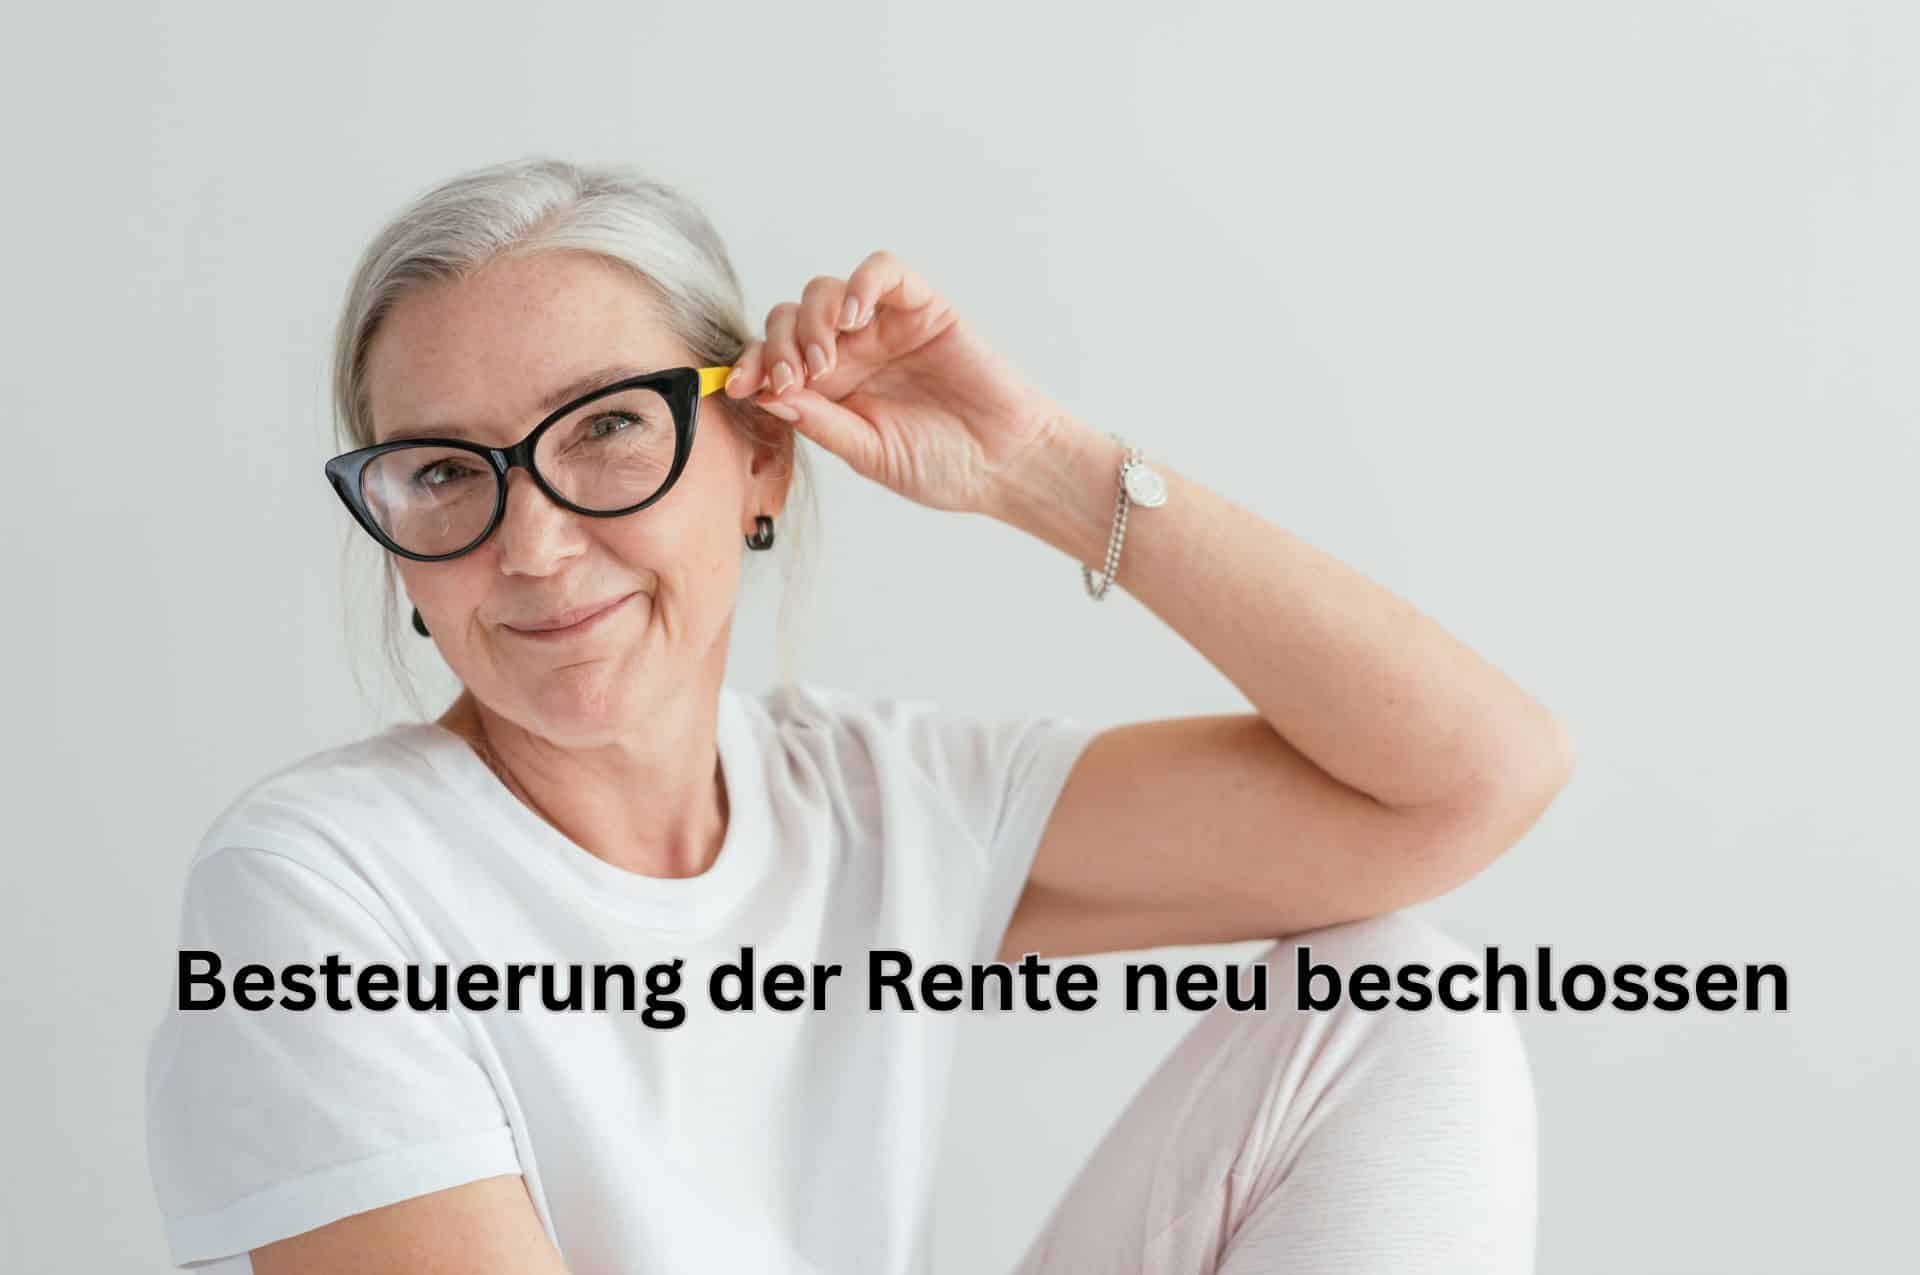 Rente: neue Besteuerung vom Bundestag beschlossen – gute Nachricht für Rentner